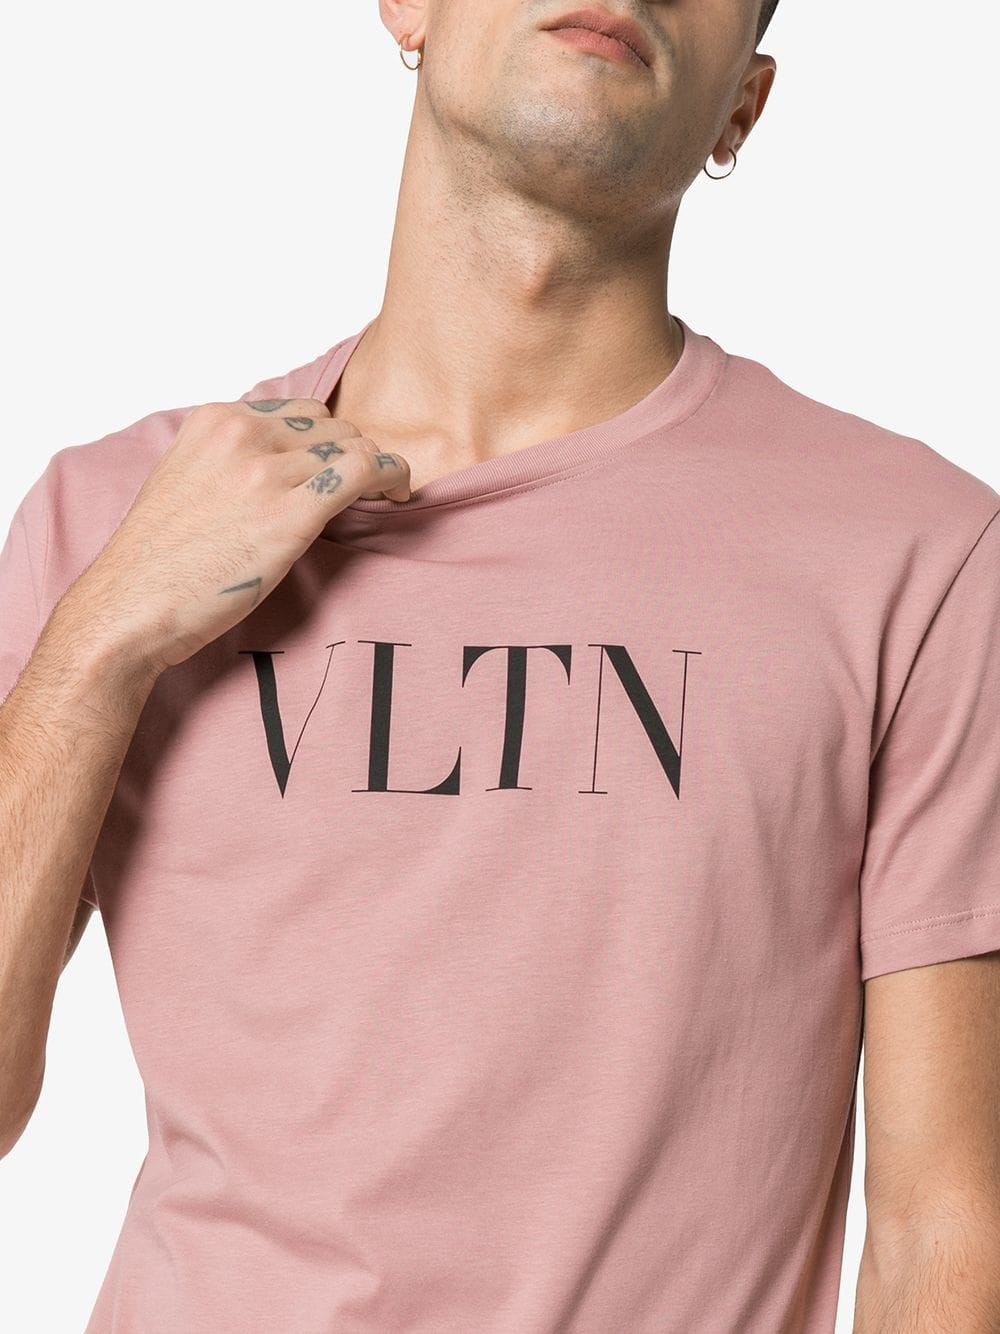 Valentino T Shirt Pink Deals, 57% OFF | www.emanagreen.com